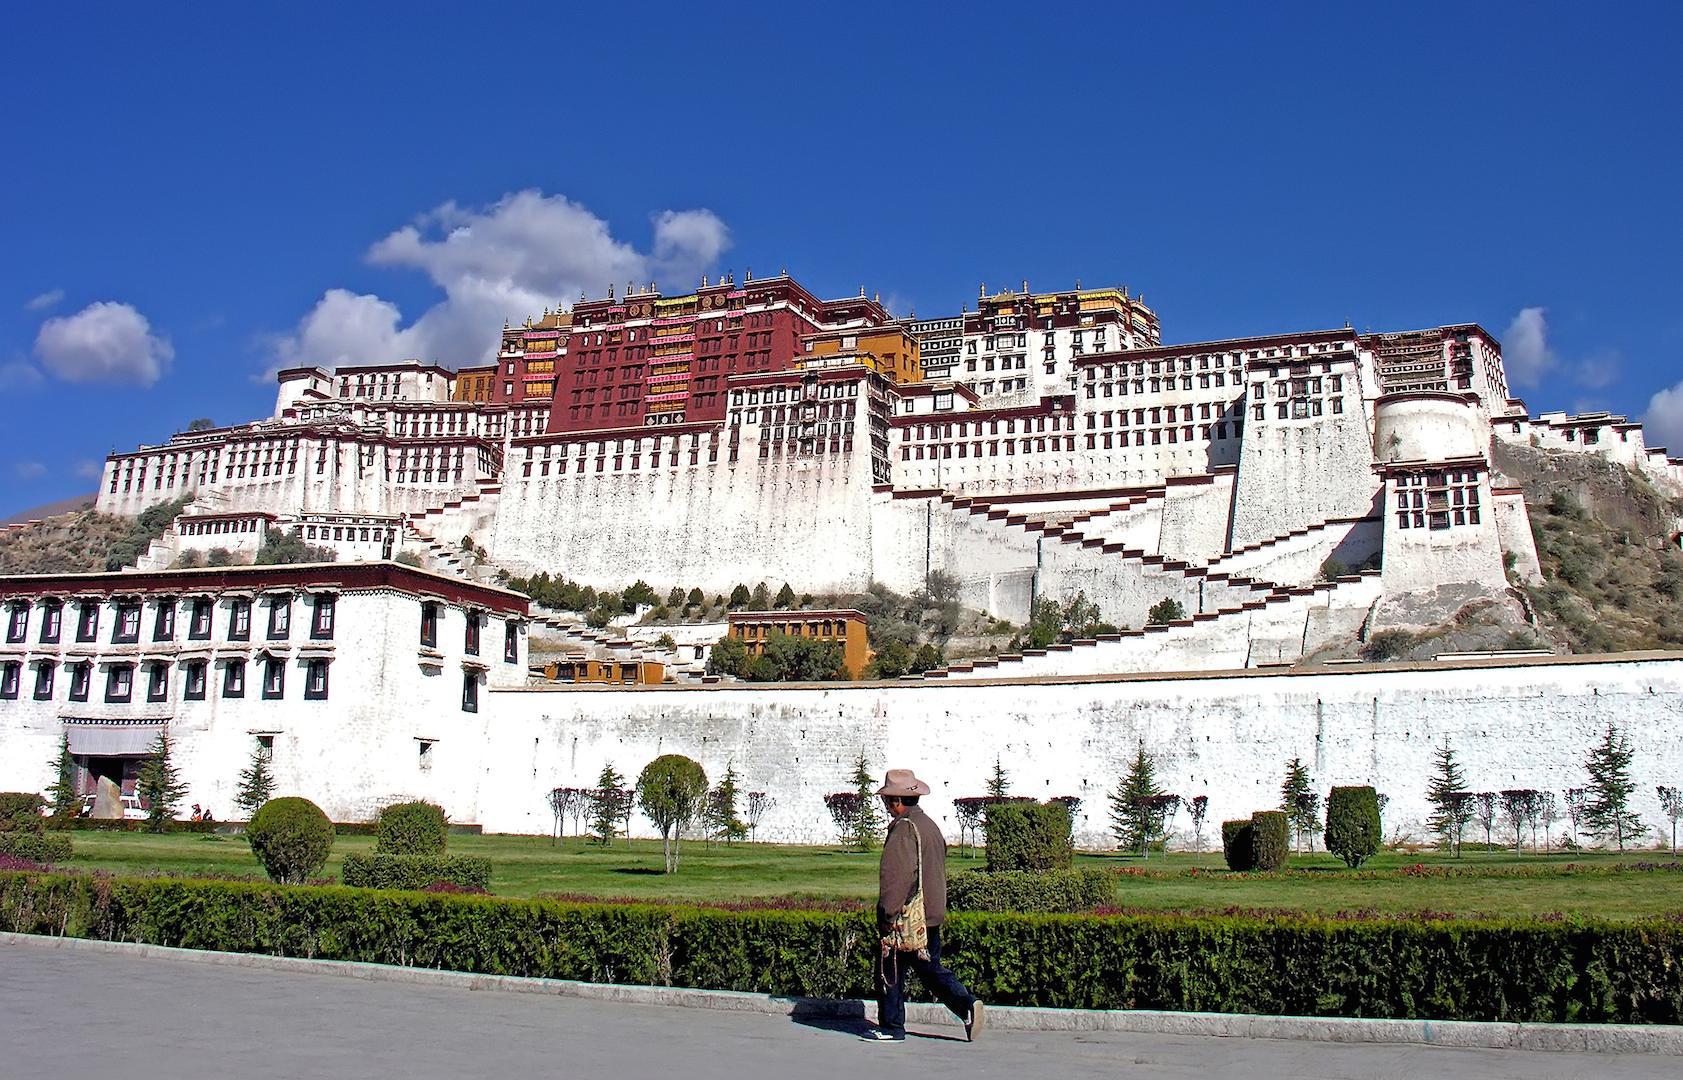 Depuis fin 2019, de nouvelles restrictions ont été apportées à la liberté du culte au Tibet. Le gouvernement chinois a interdit aux anciens employés du gouvernement tibétain d'exercer toute forme de culte tibétain traditionnel. (Source : Euractiv)